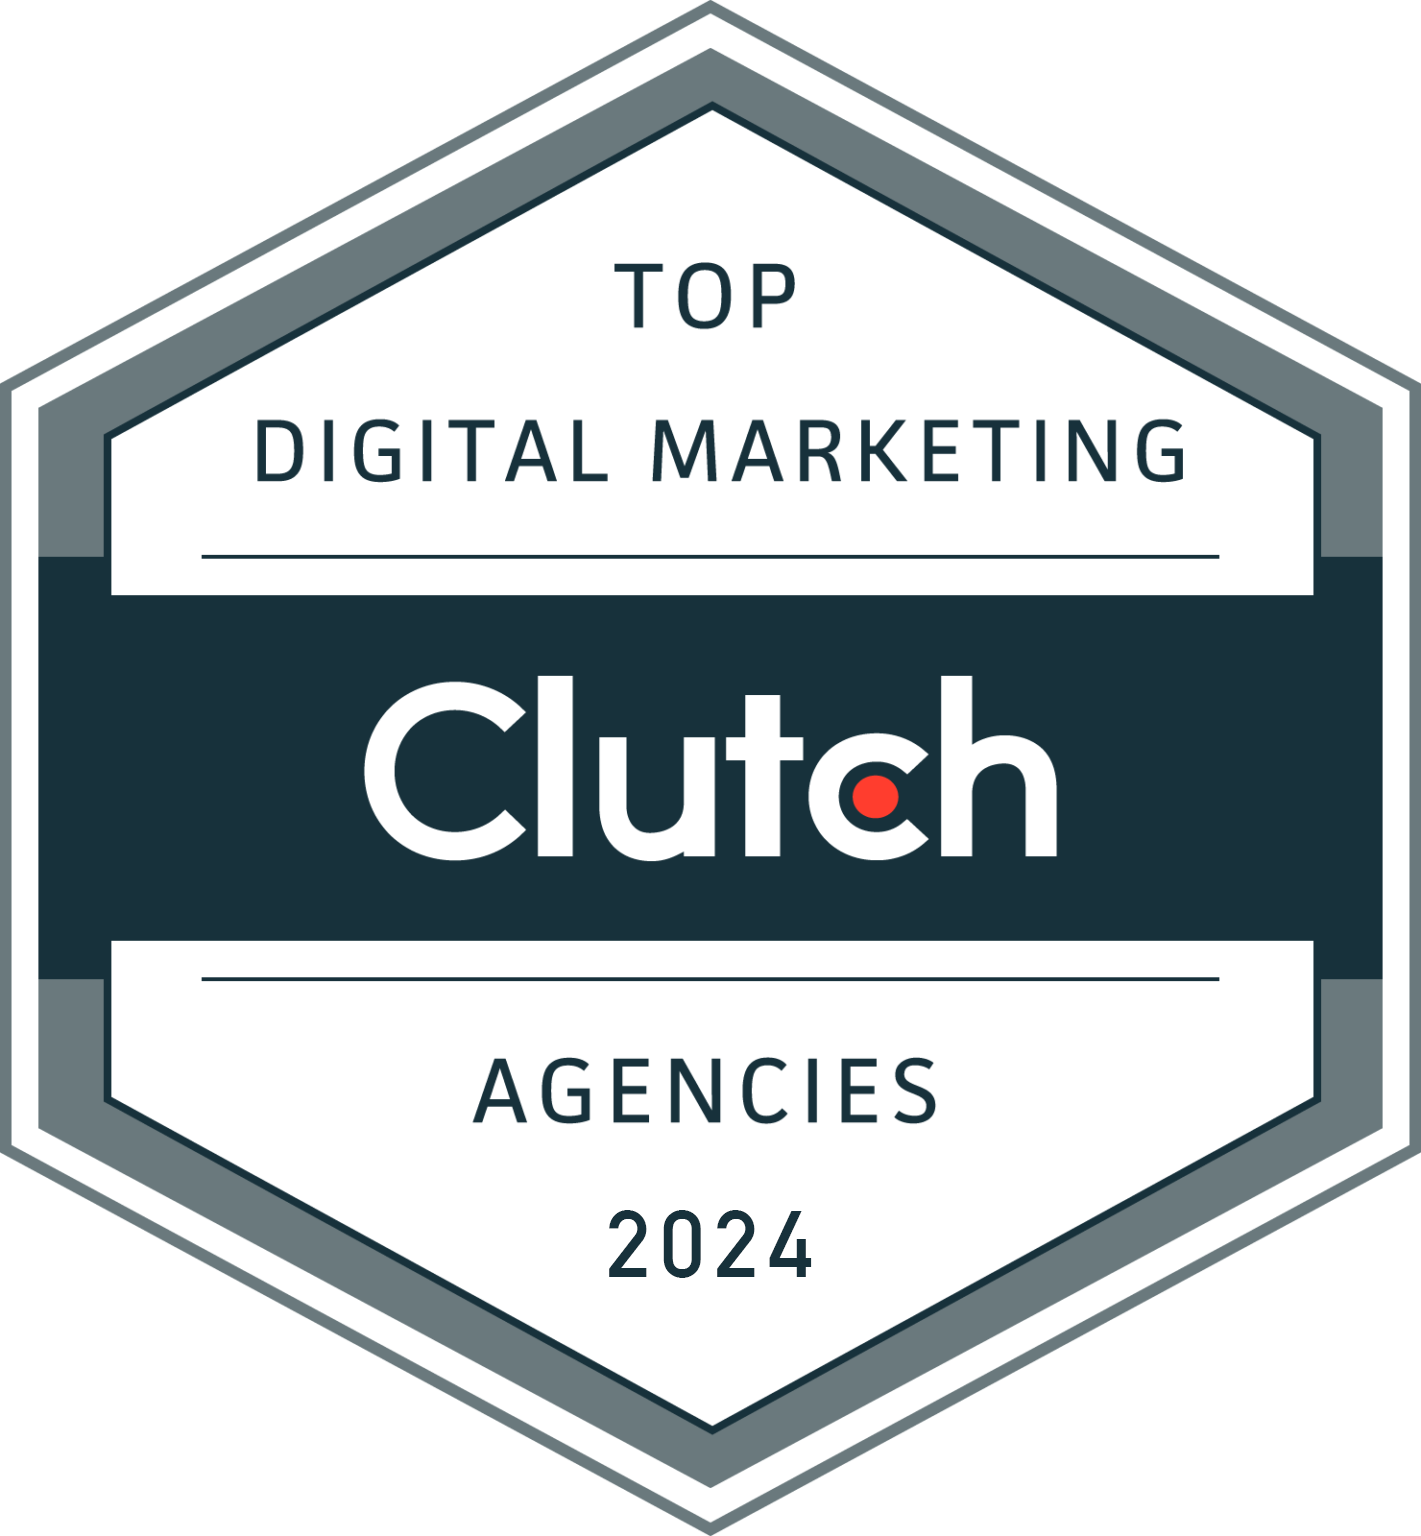 Top-Digital-Marketing-Agencies-2021-by-Clutch-full-width